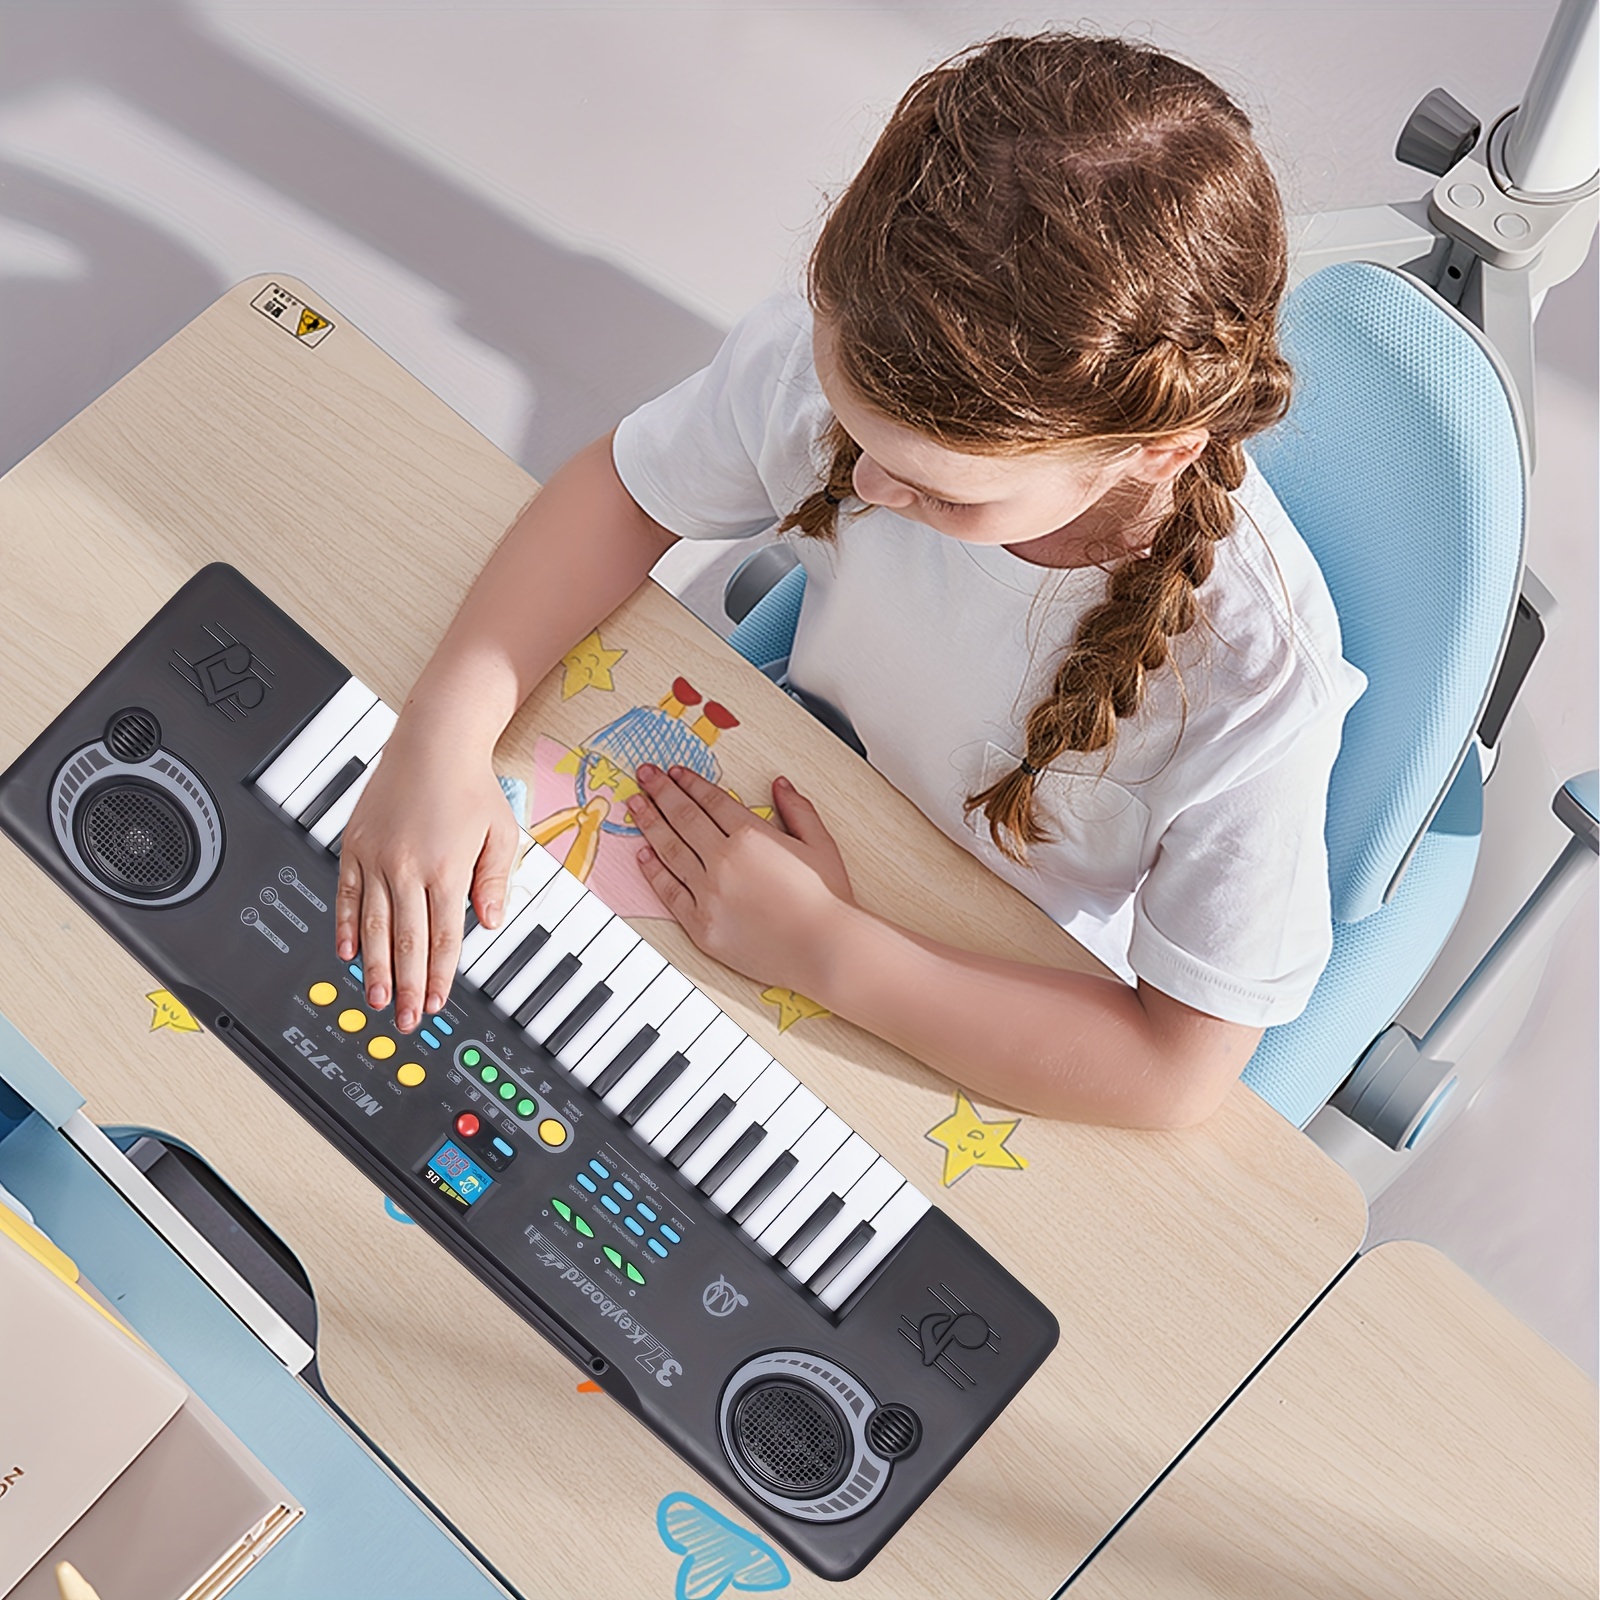 Claviers Piano 37 Touches Clavier Électronique Piano Pour Enfants